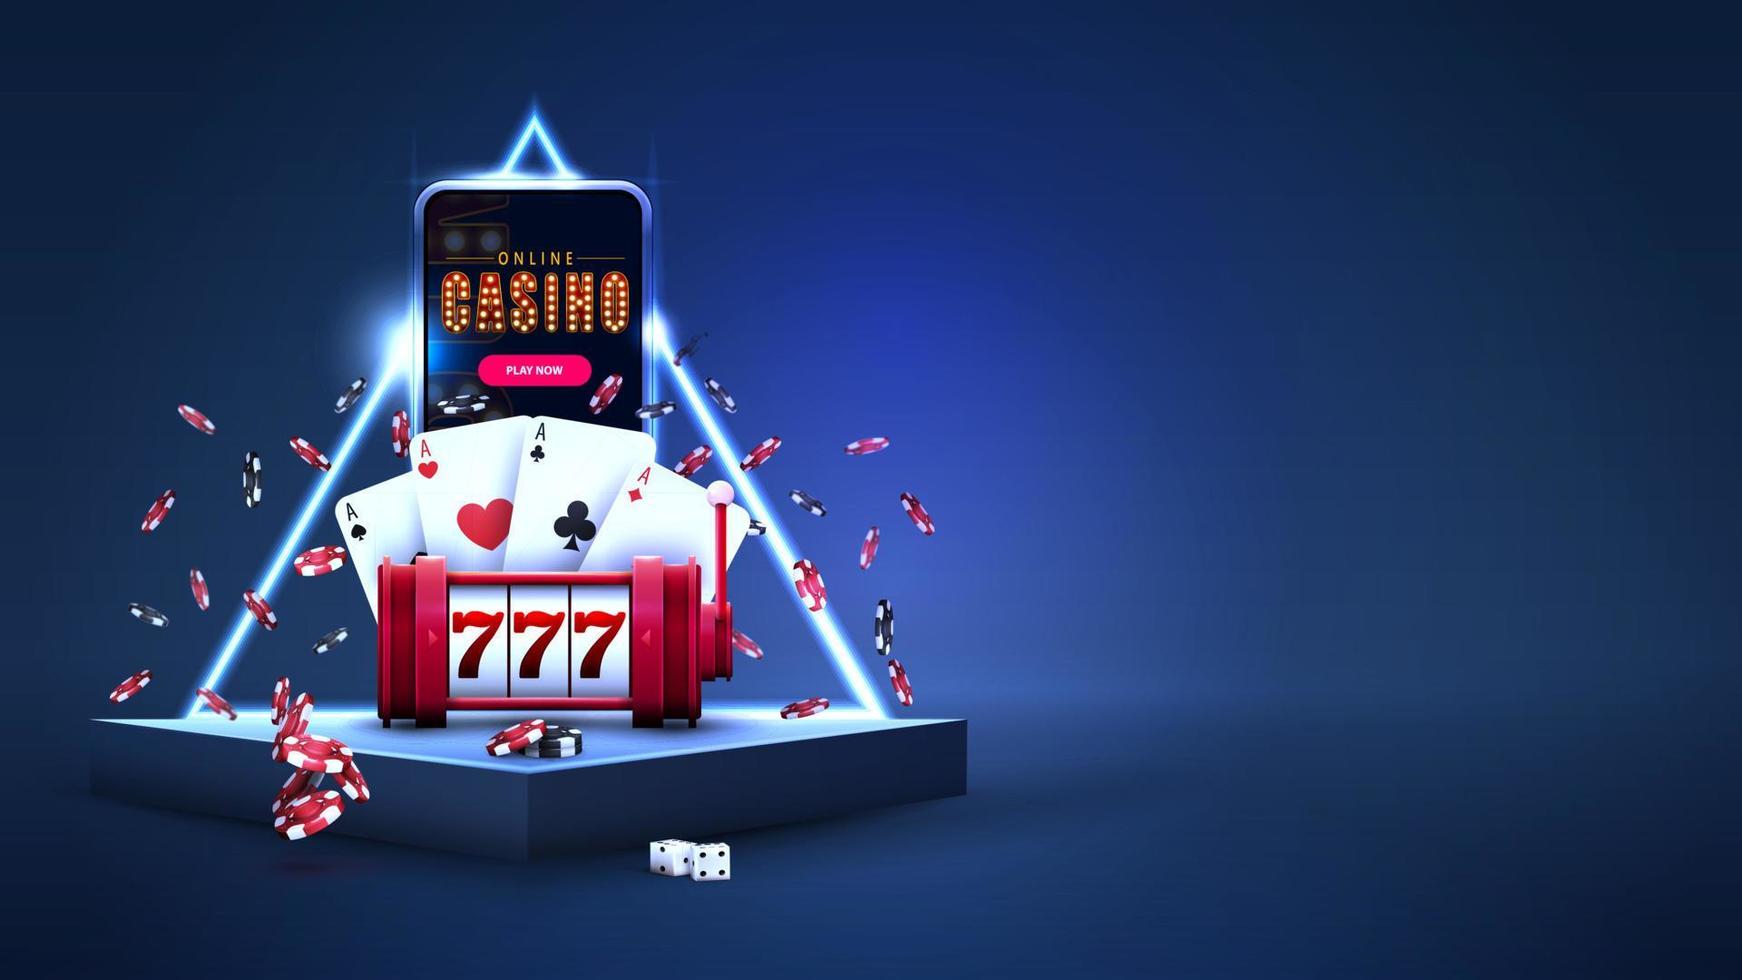 blauwe driehoekige podia met smartphone, rode gokautomaat, pokerfiches, speelkaarten in scène met blauwe neon driehoekige rand op achtergrond vector